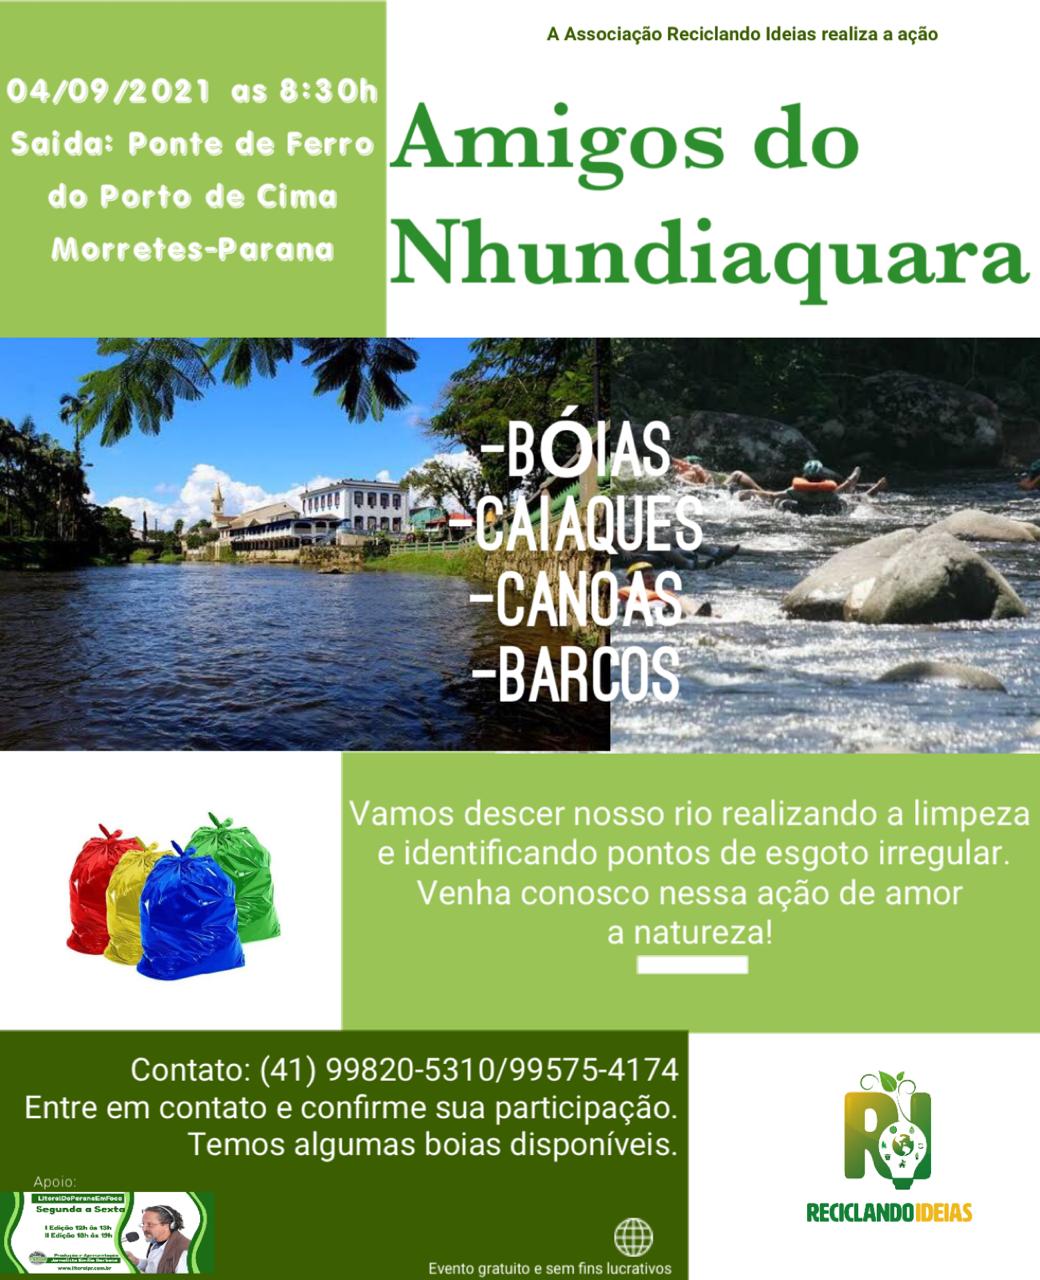 ddbf8f94-bed2-444f-83ab-02672b764b78 Amigos do Nhundiaquara: associação realiza ação de limpeza e inspeção de pontos de esgoto no rio